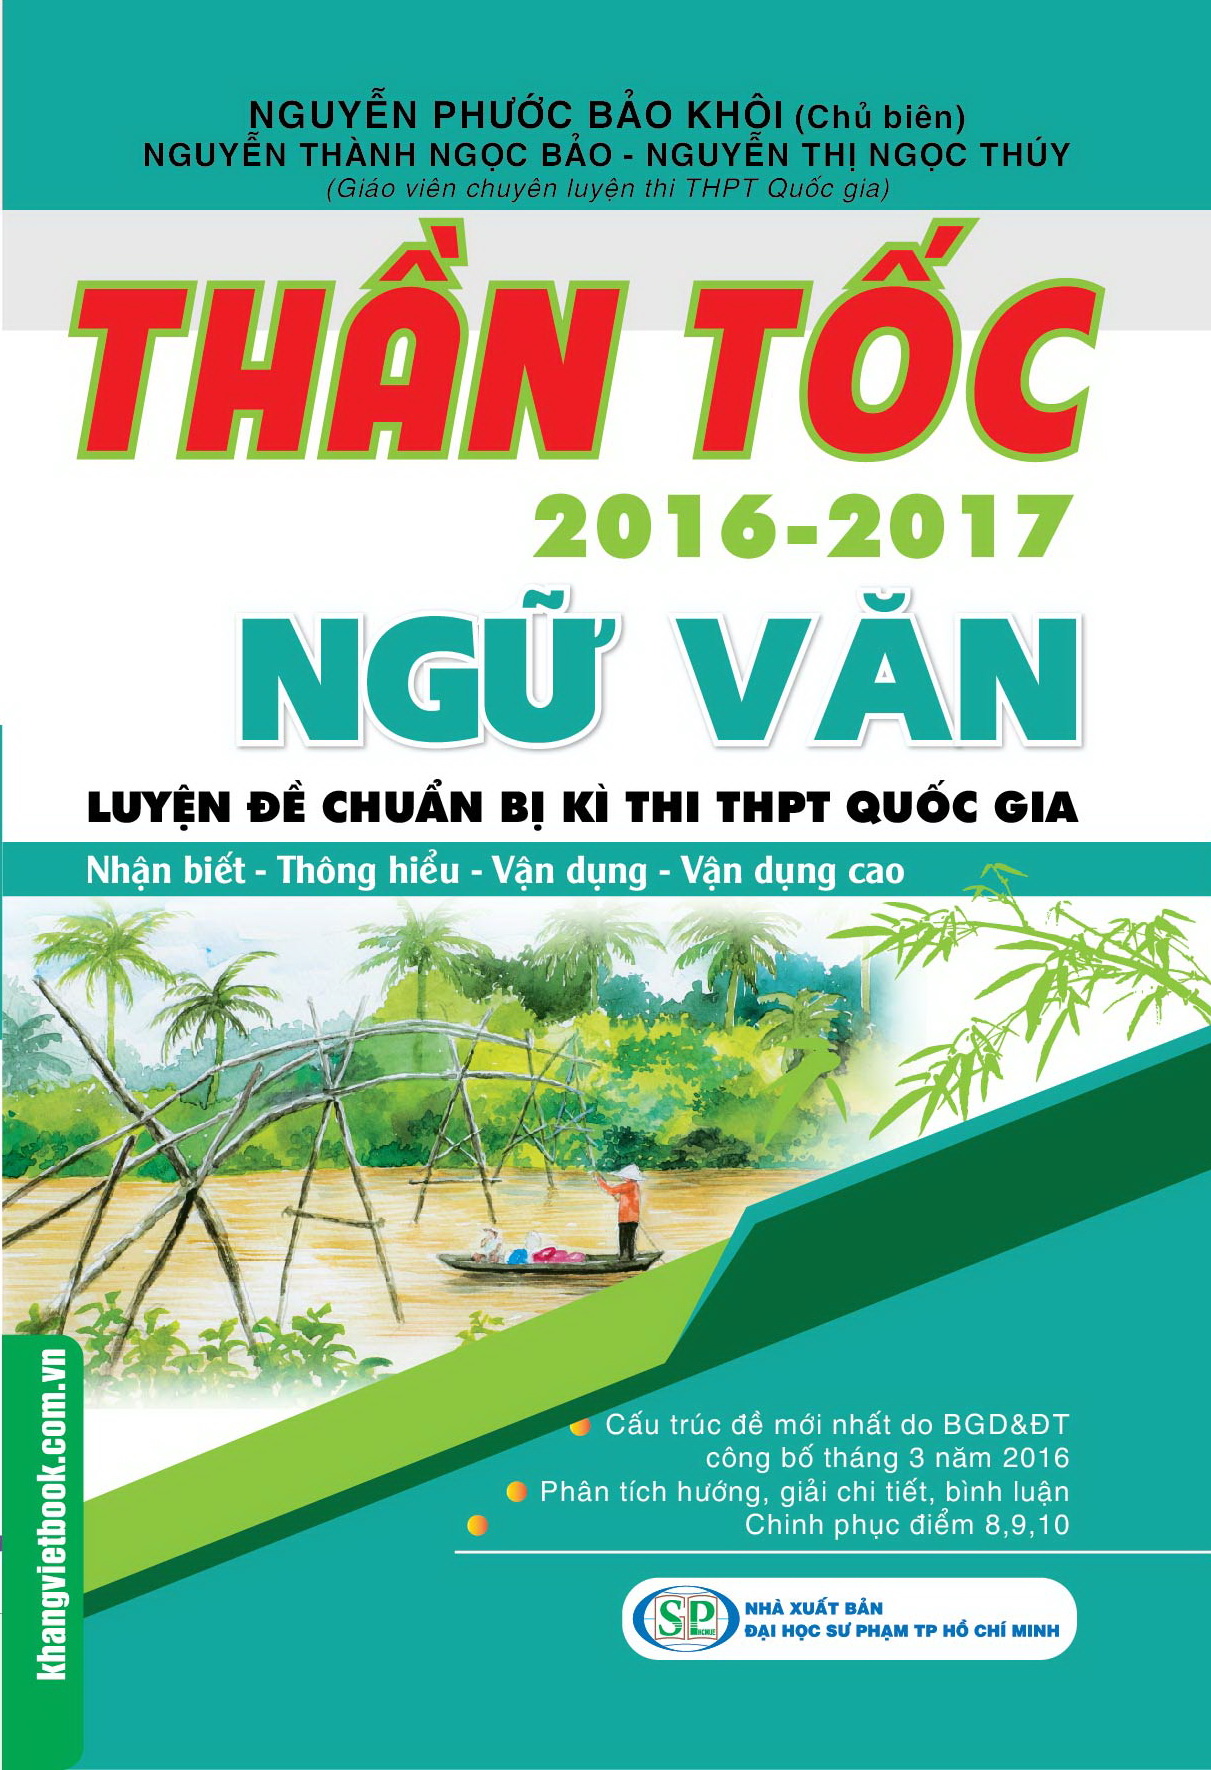 than-toc-luyen-de-chuan-bi-ki-thi-thpt-quoc-gia-ngu-van-2016-2017-